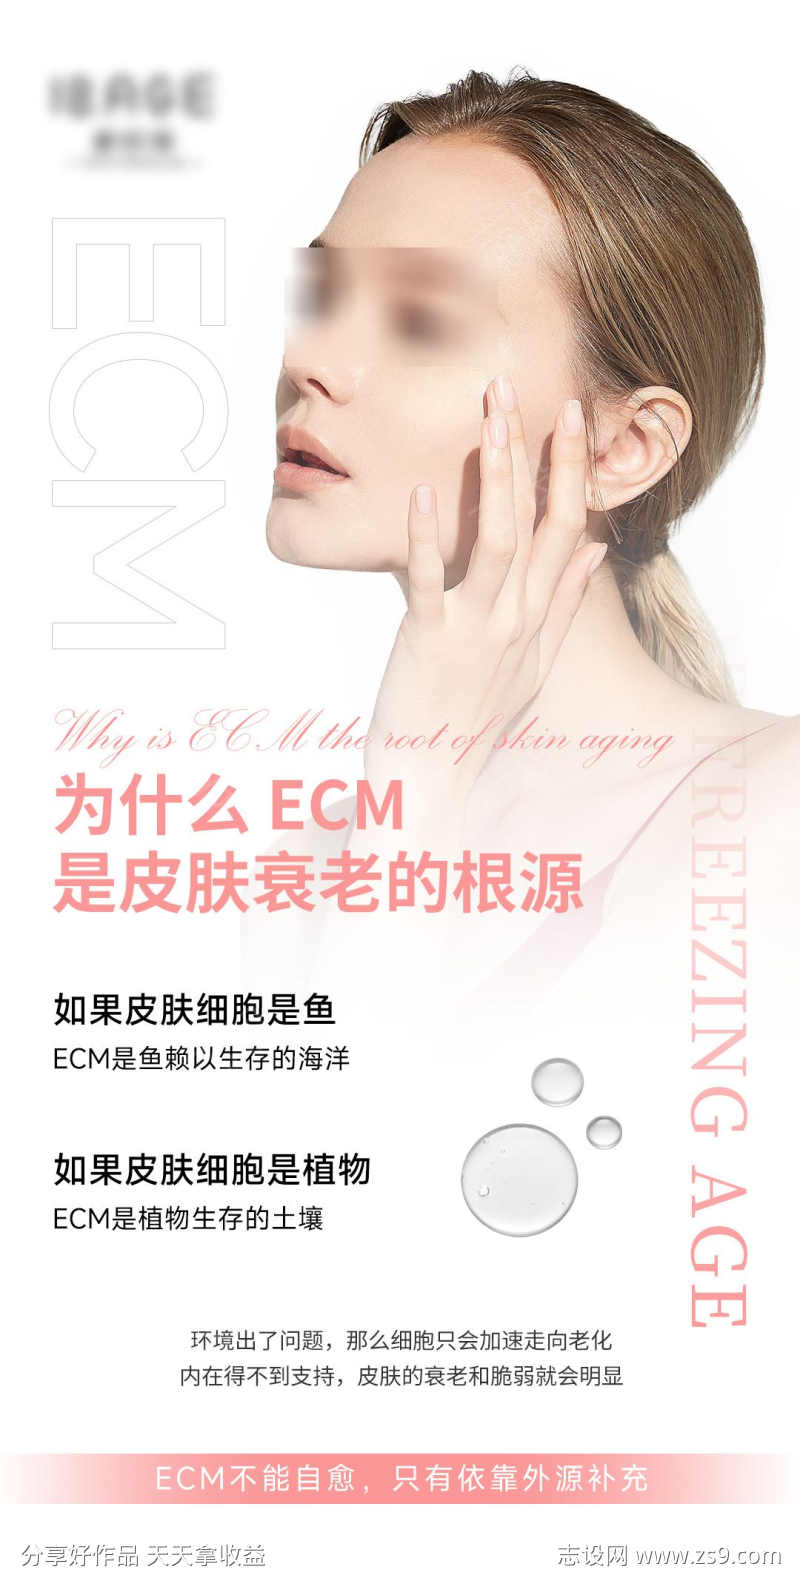 ECM是皮肤衰老的根源